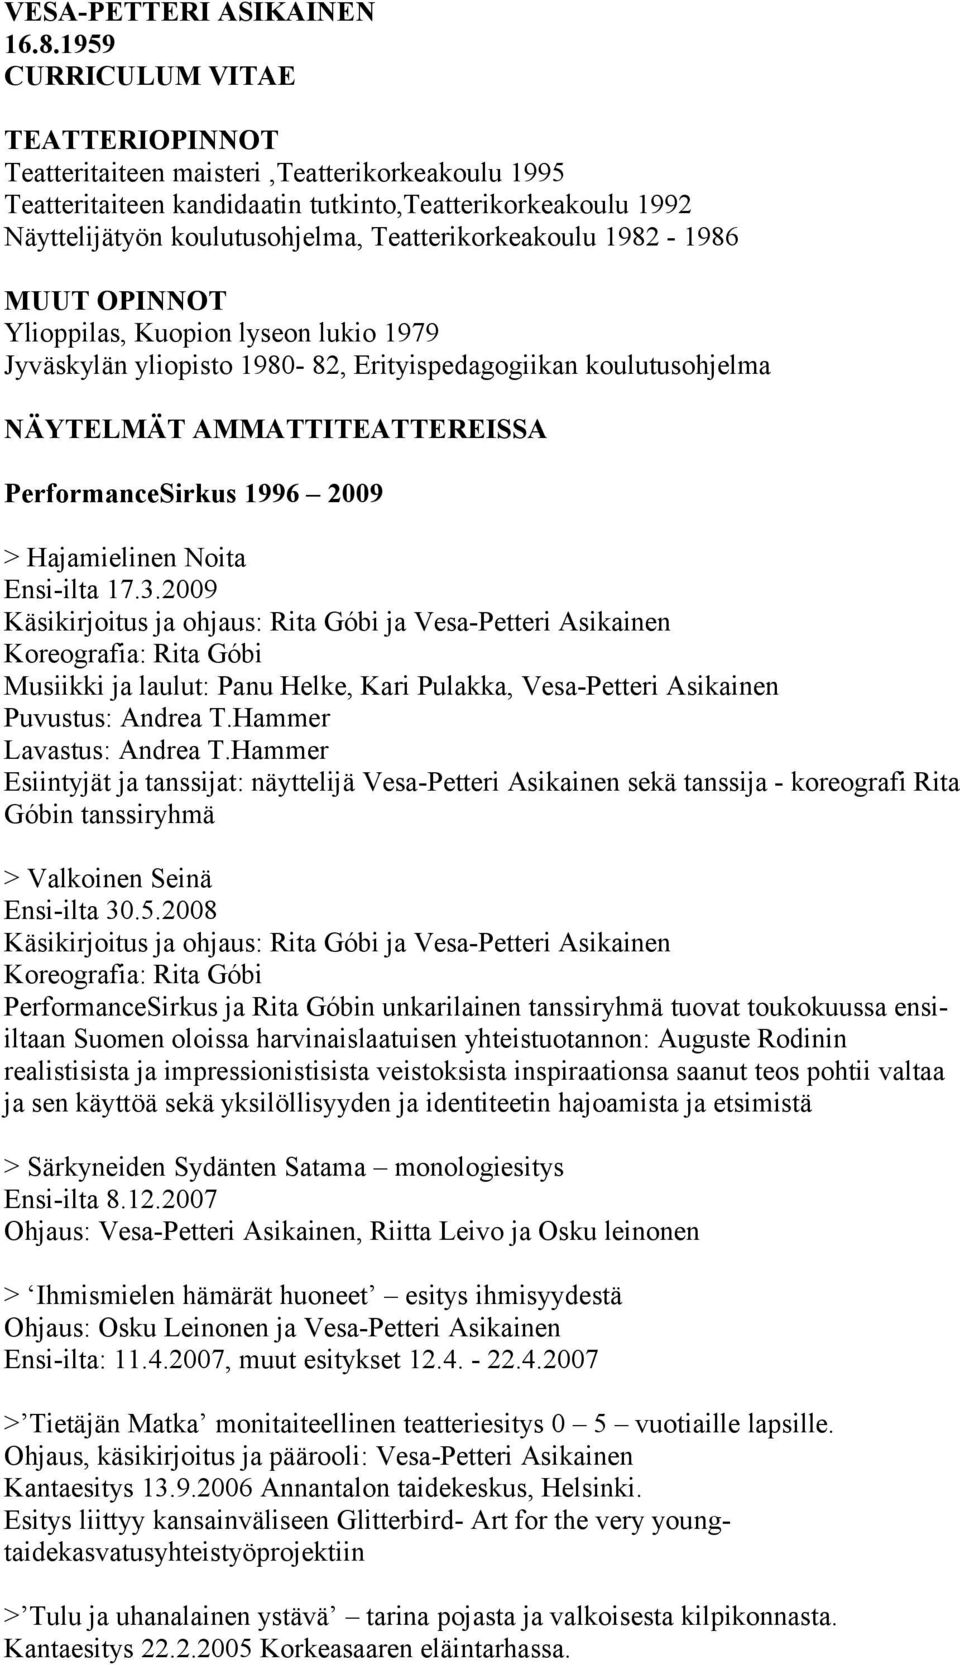 Teatterikorkeakoulu 1982-1986 MUUT OPINNOT Ylioppilas, Kuopion lyseon lukio 1979 Jyväskylän yliopisto 1980-82, Erityispedagogiikan koulutusohjelma NÄYTELMÄT AMMATTITEATTEREISSA PerformanceSirkus 1996